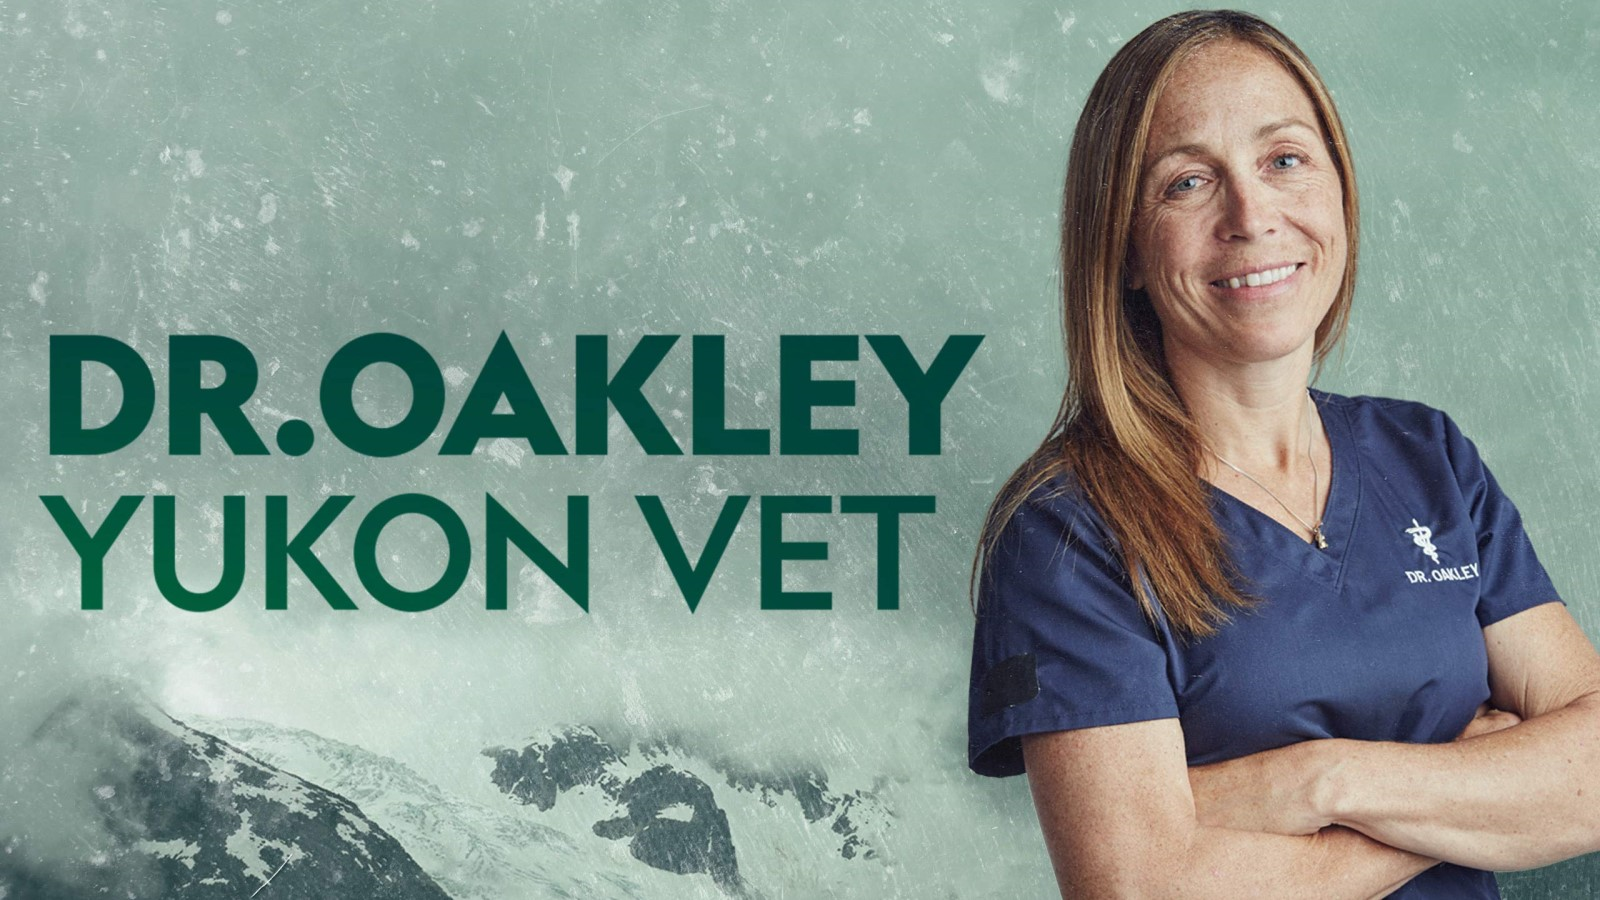 Dr. Oakley, Yukon Vet - Season 6 Episode 5 Watch Online 